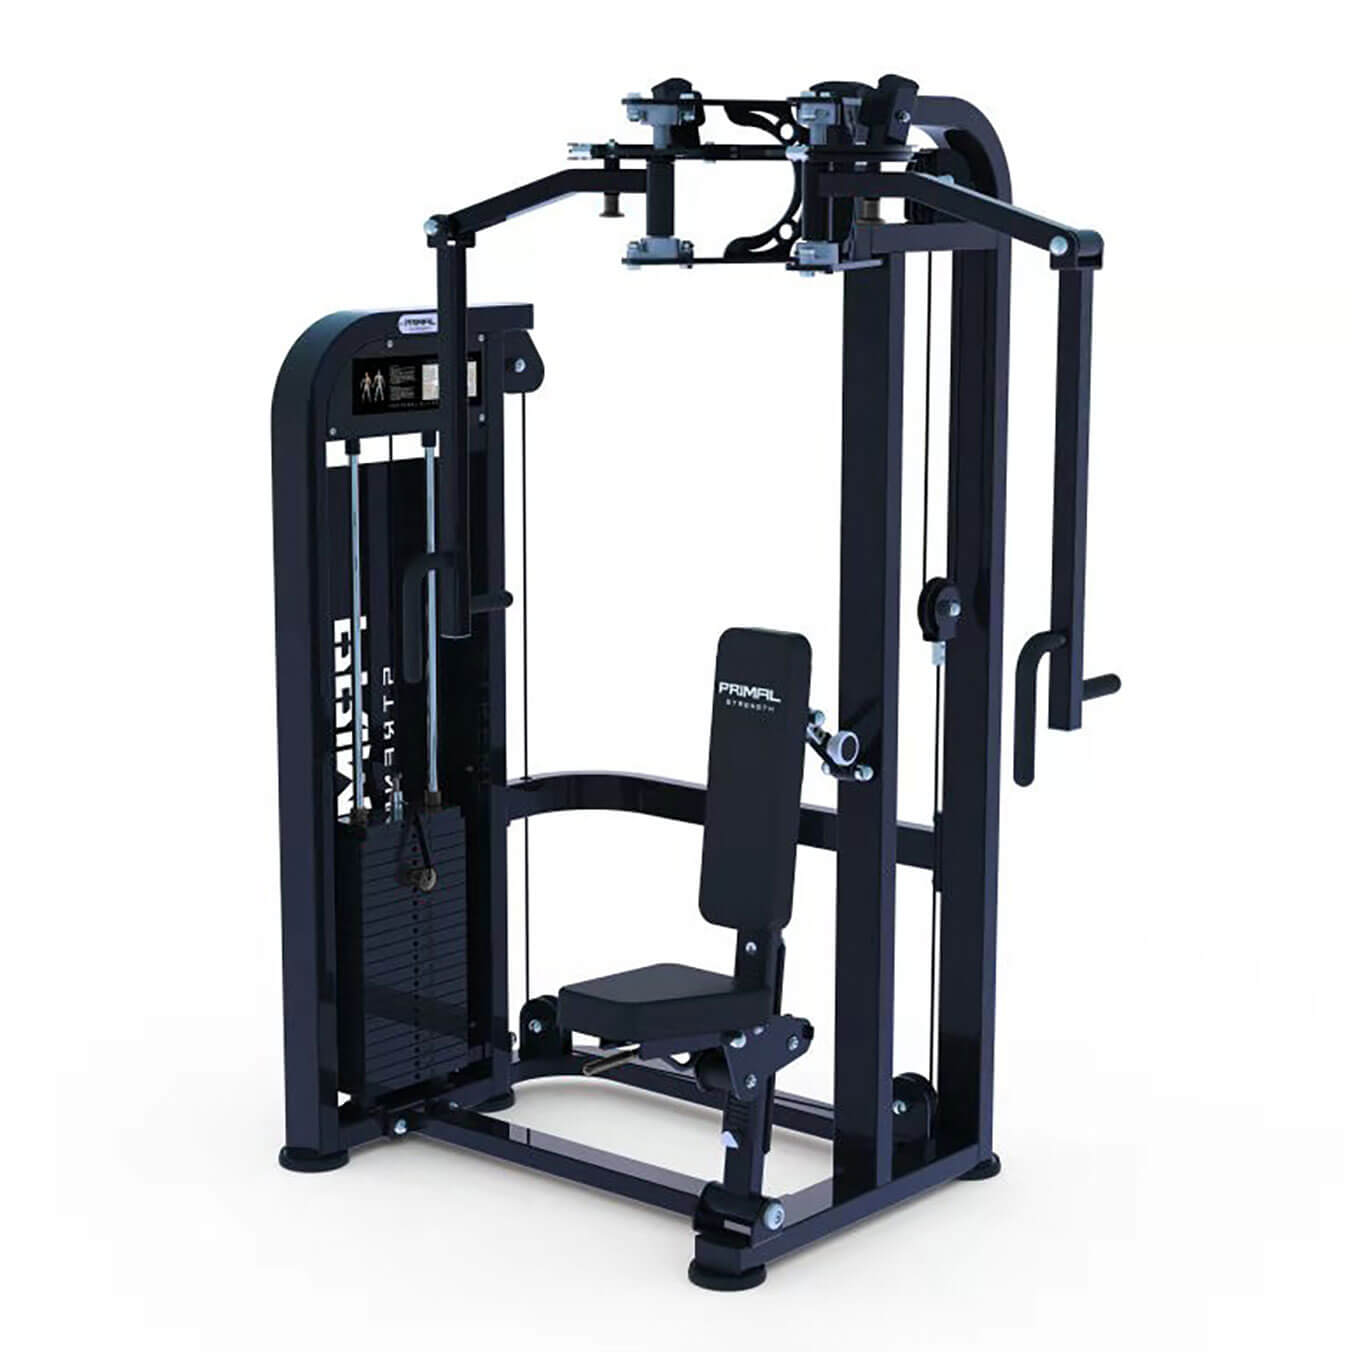 a commercial pec dec gym resistance machine